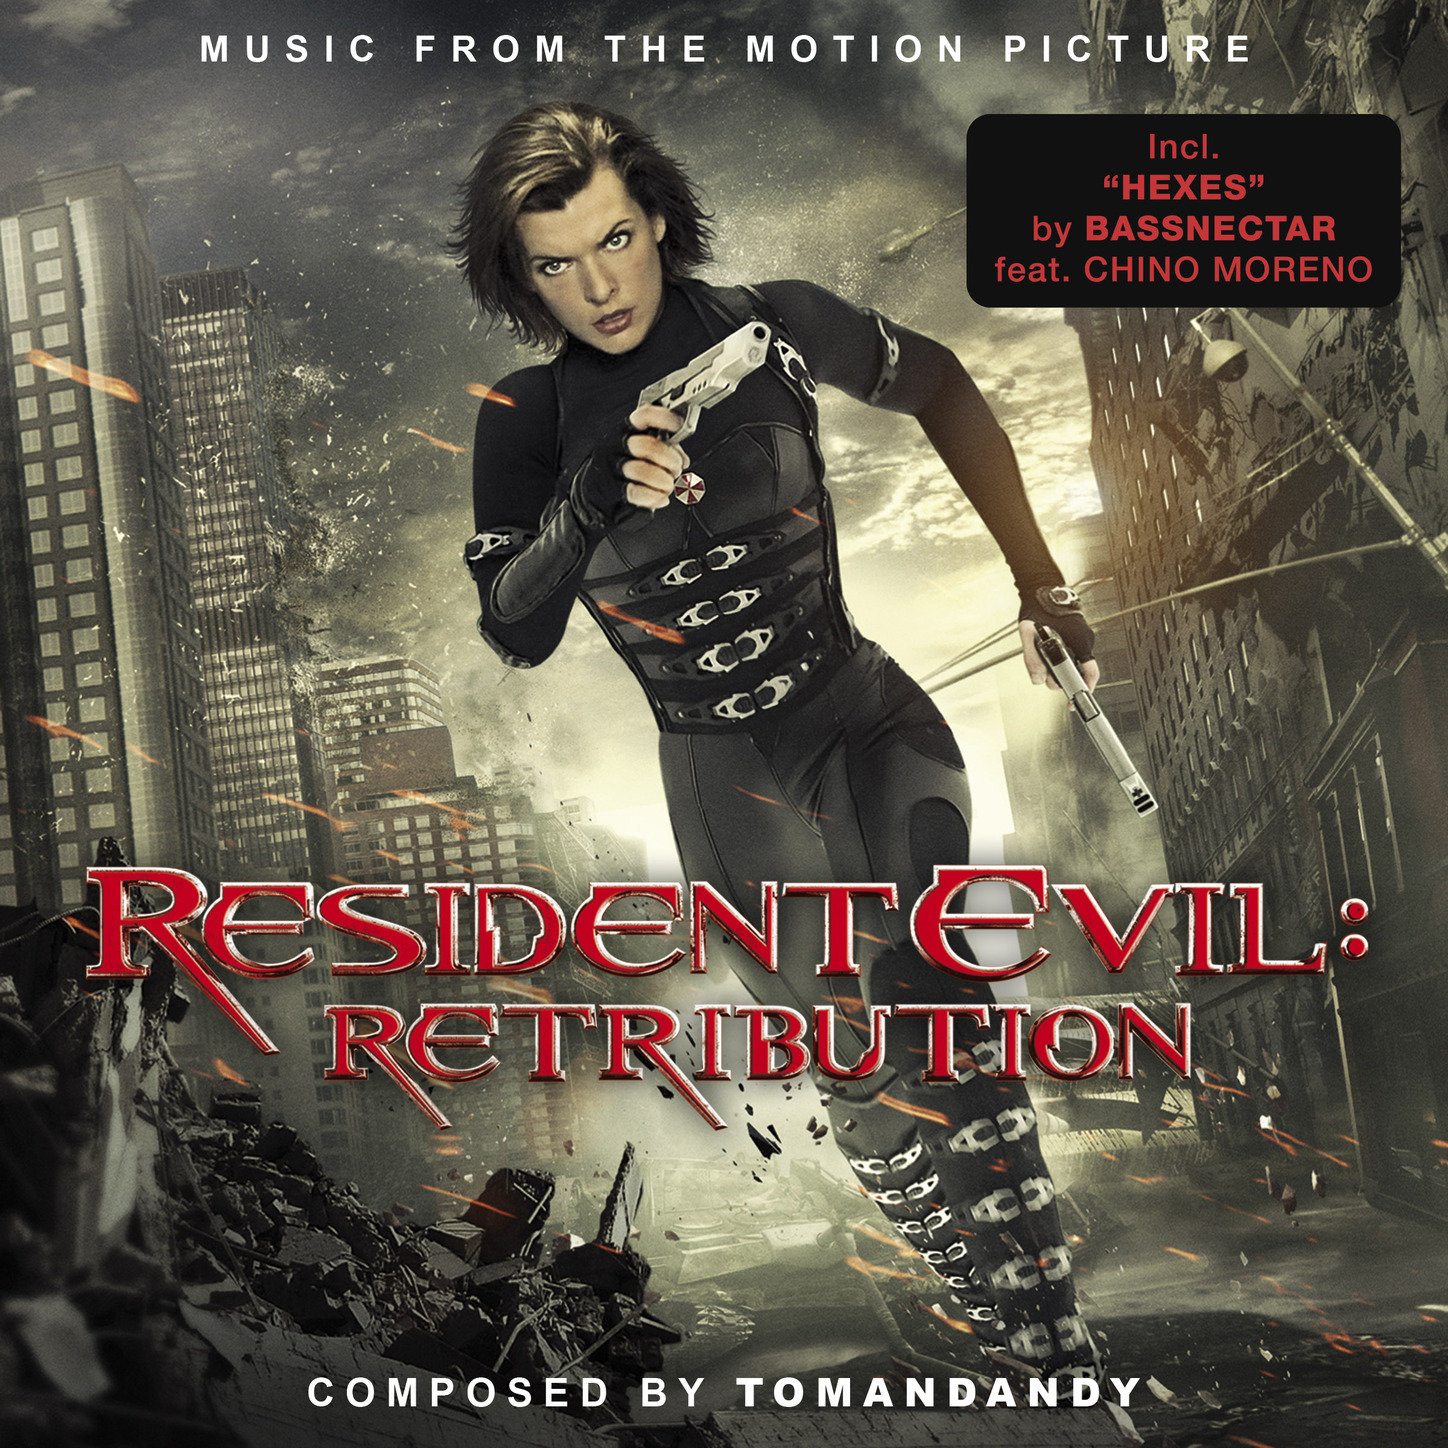 Resident evil саундтреки. Обитель зла 5 Возмездие 2012. Милла Йовович обитель зла 5. Милла Йовович обитель зла Возмездие.